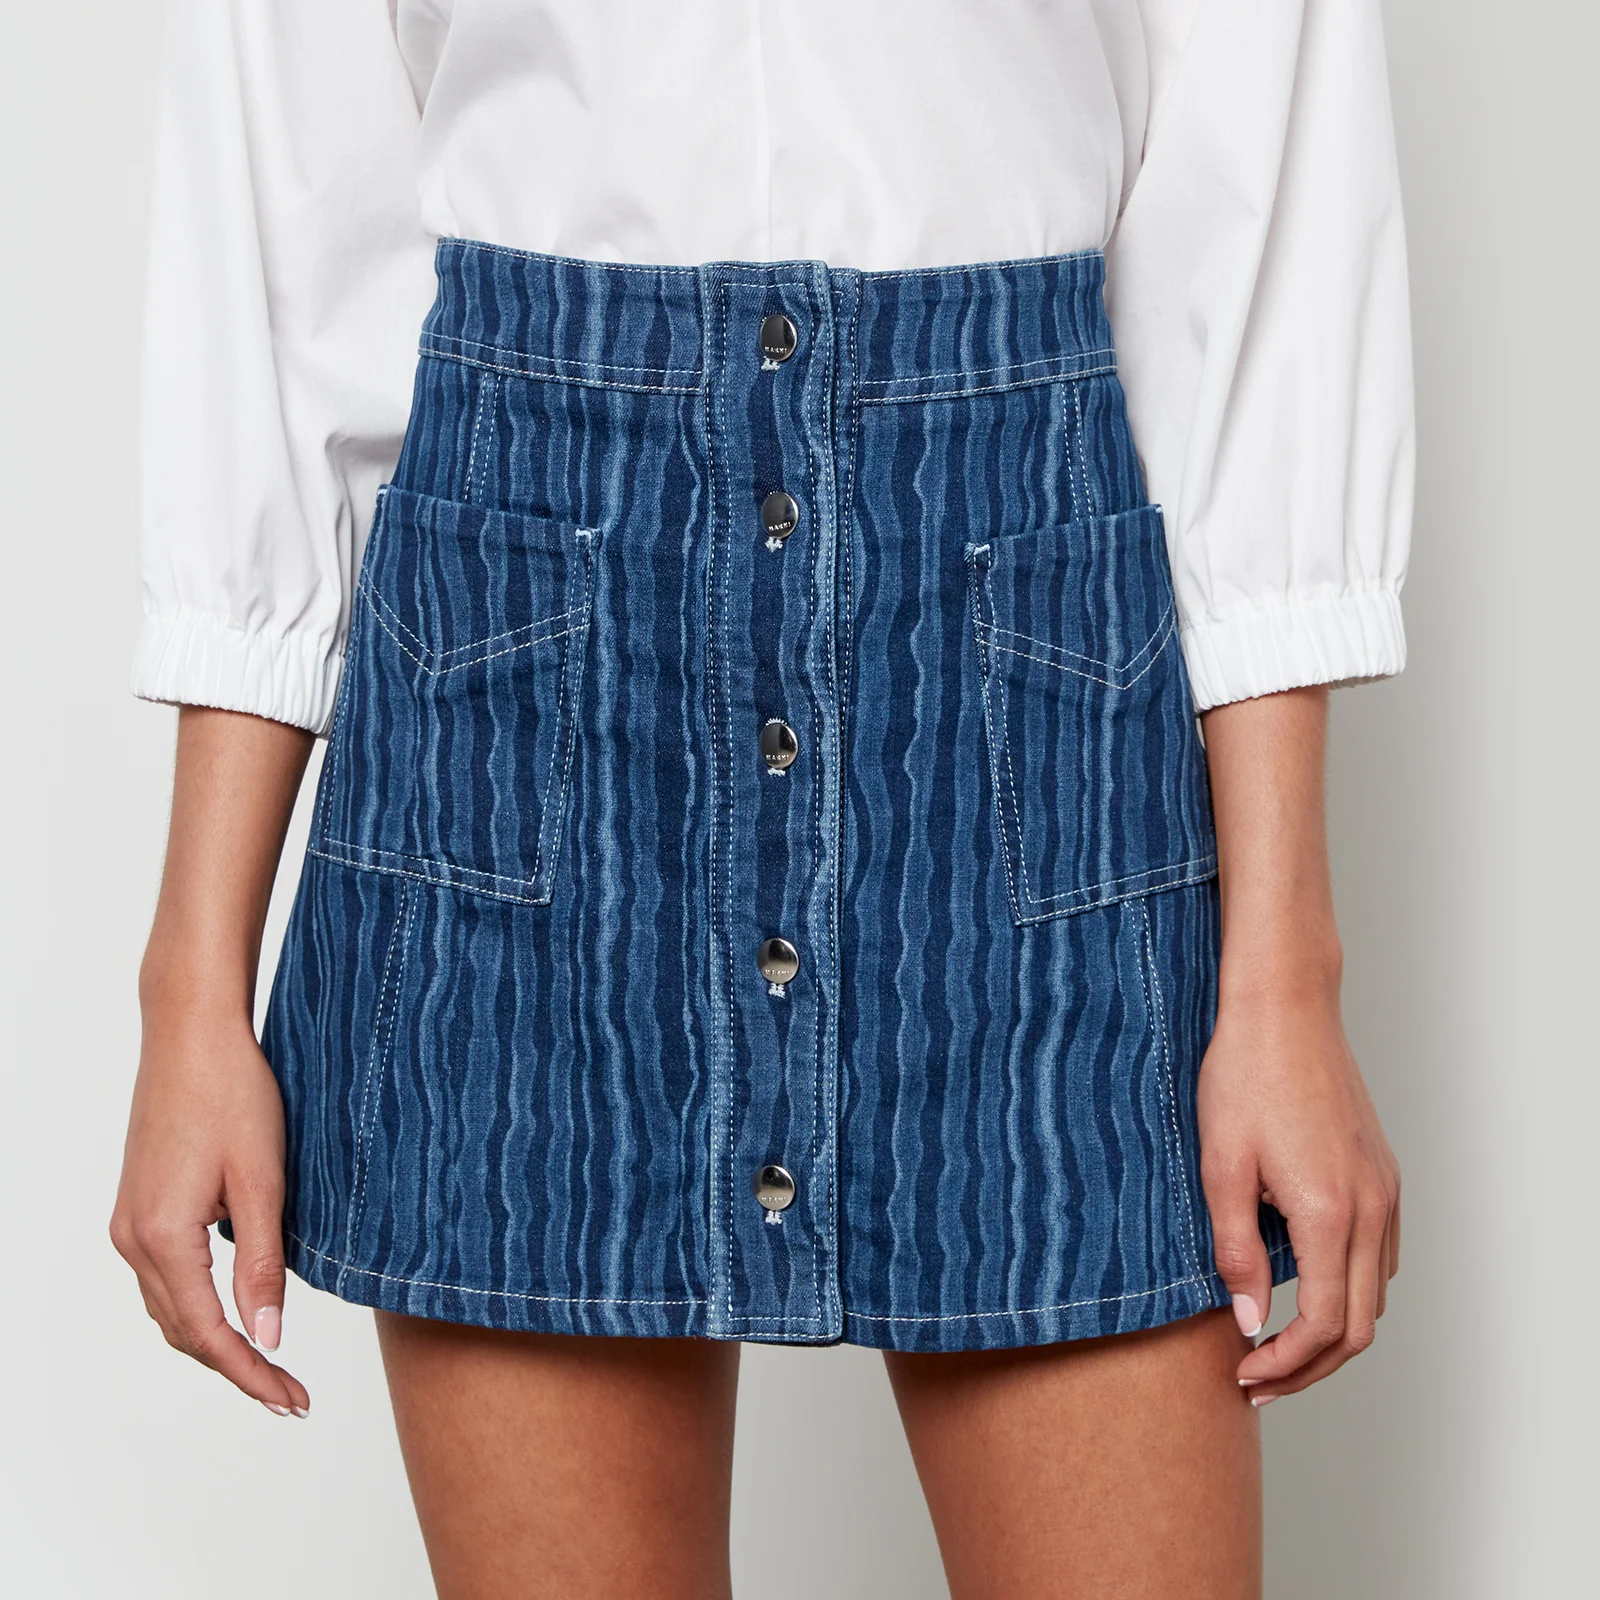 Marni Women's Mini Skirt - Blublack Image 1